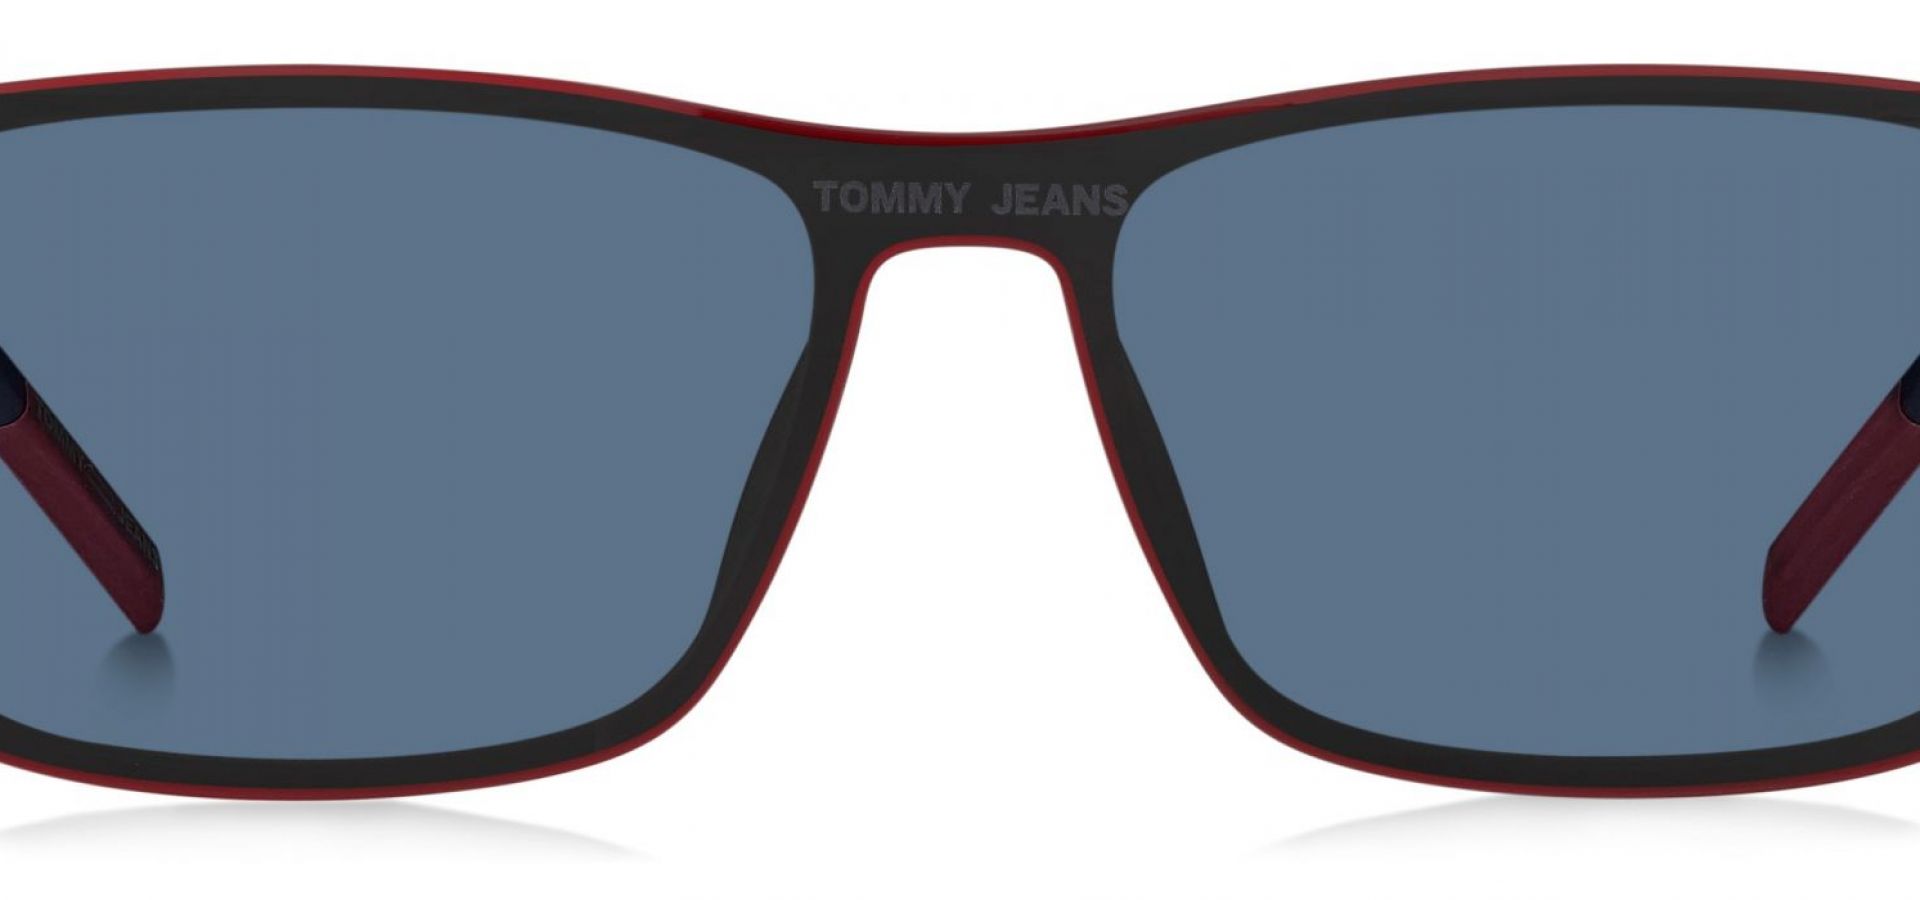 Sunčane naočale Tommy Jeans TOMMY HILFIGER 0017: Boja: Matte Black, Veličina: 58-14-140, Spol: muške, Materijal: acetat